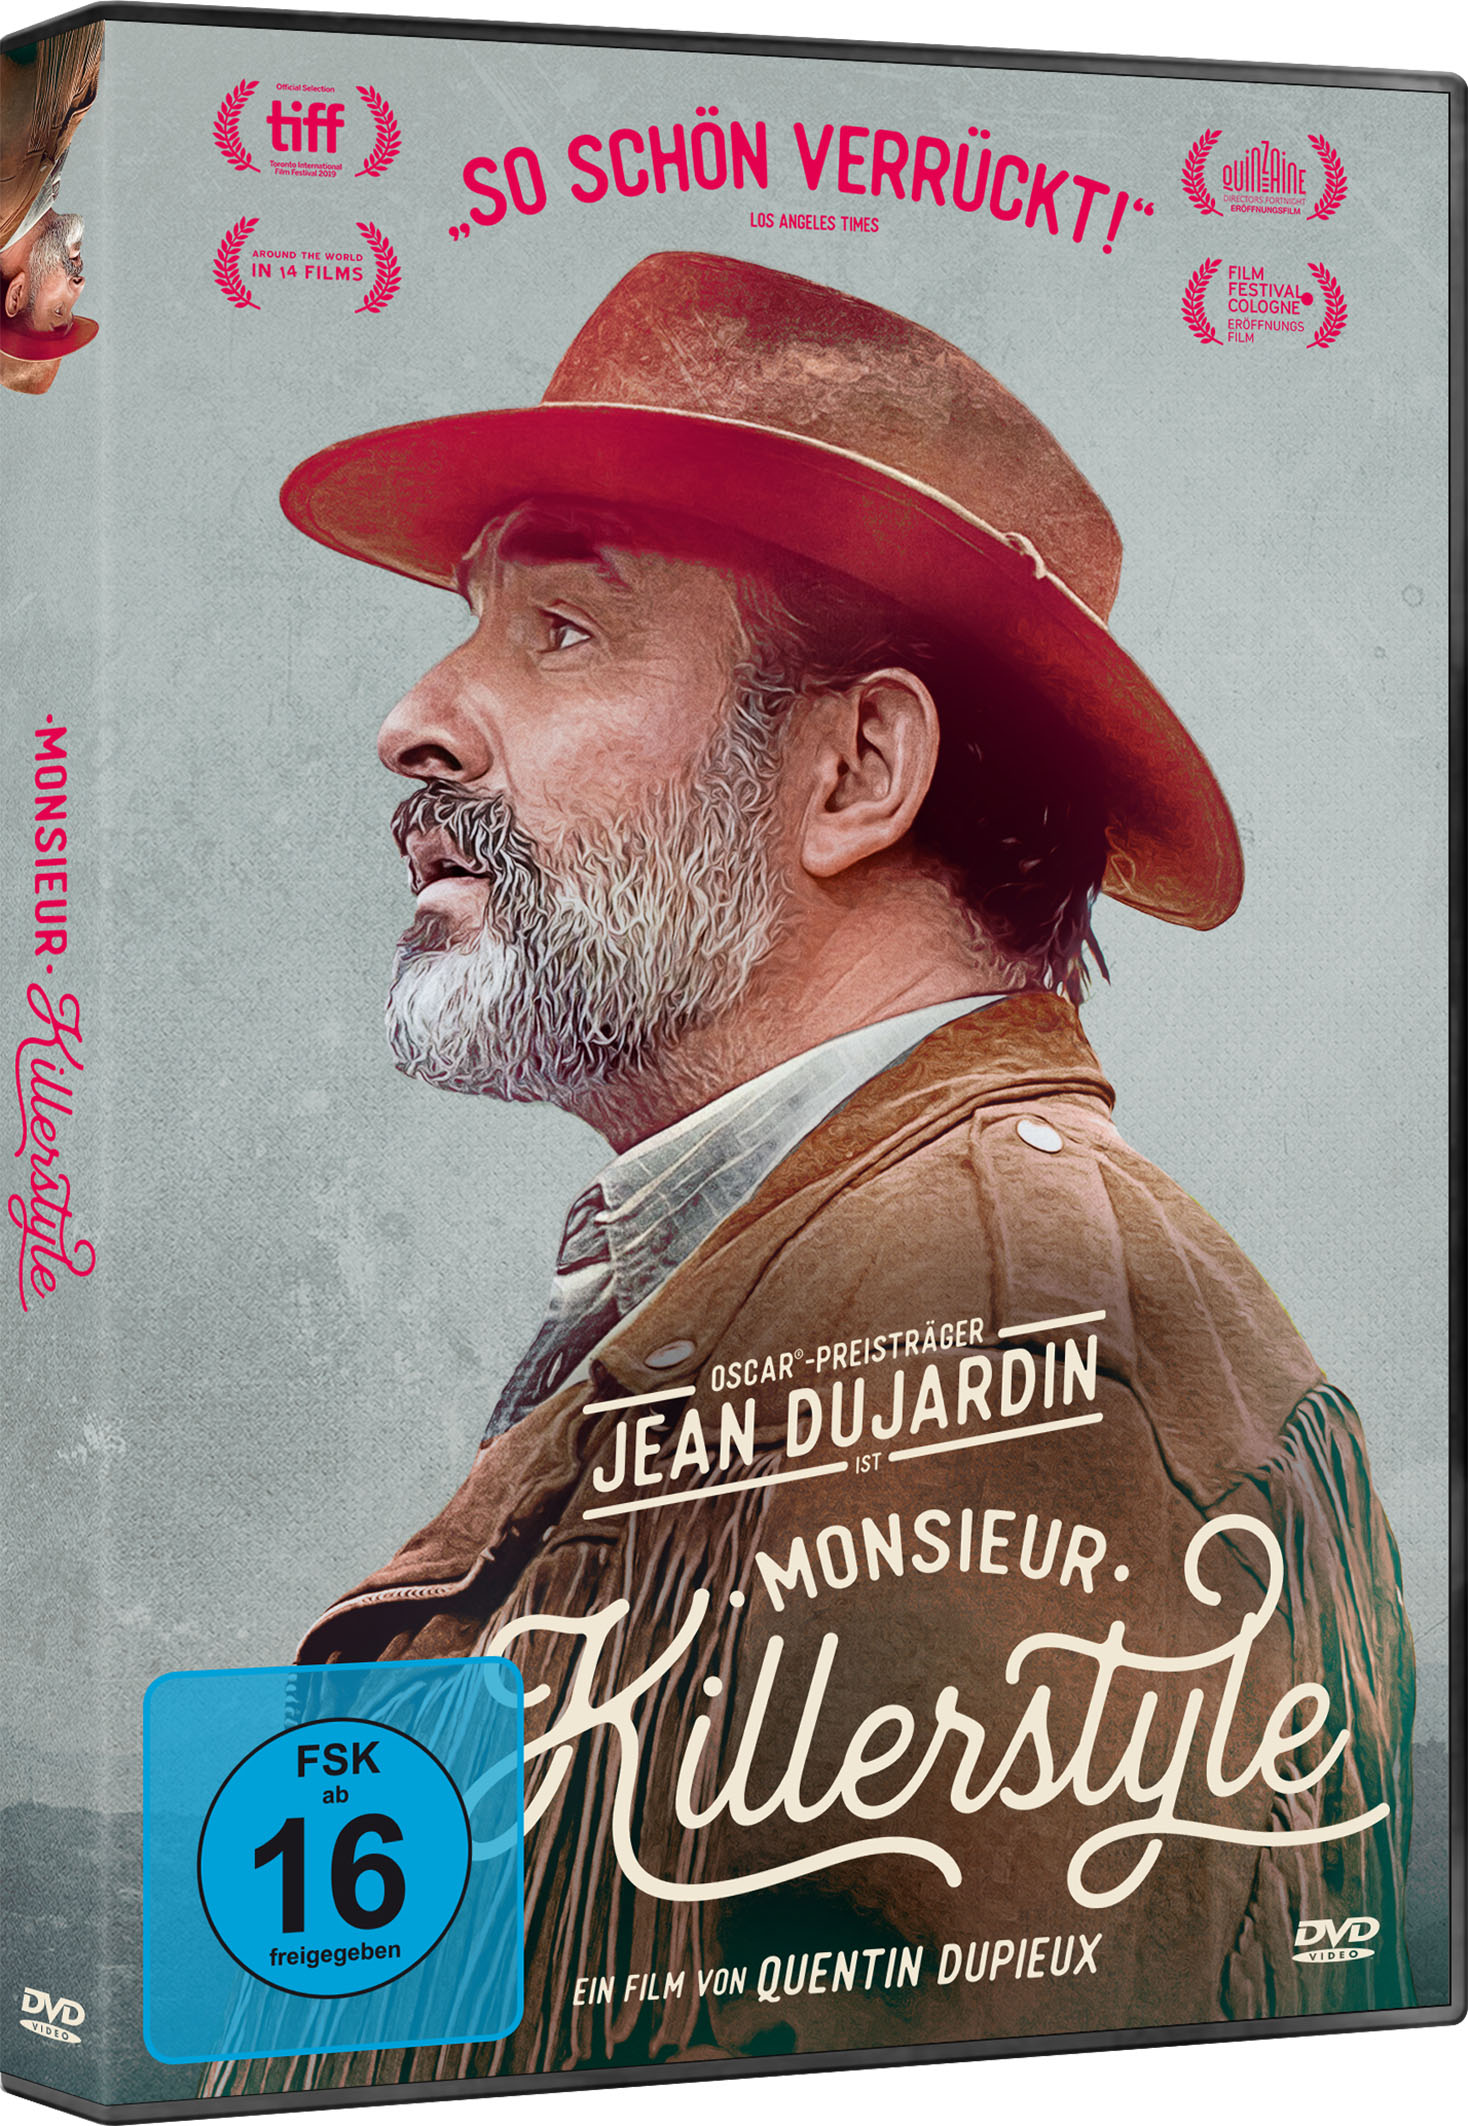 Monsieur Killerstyle (DVD) Image 2